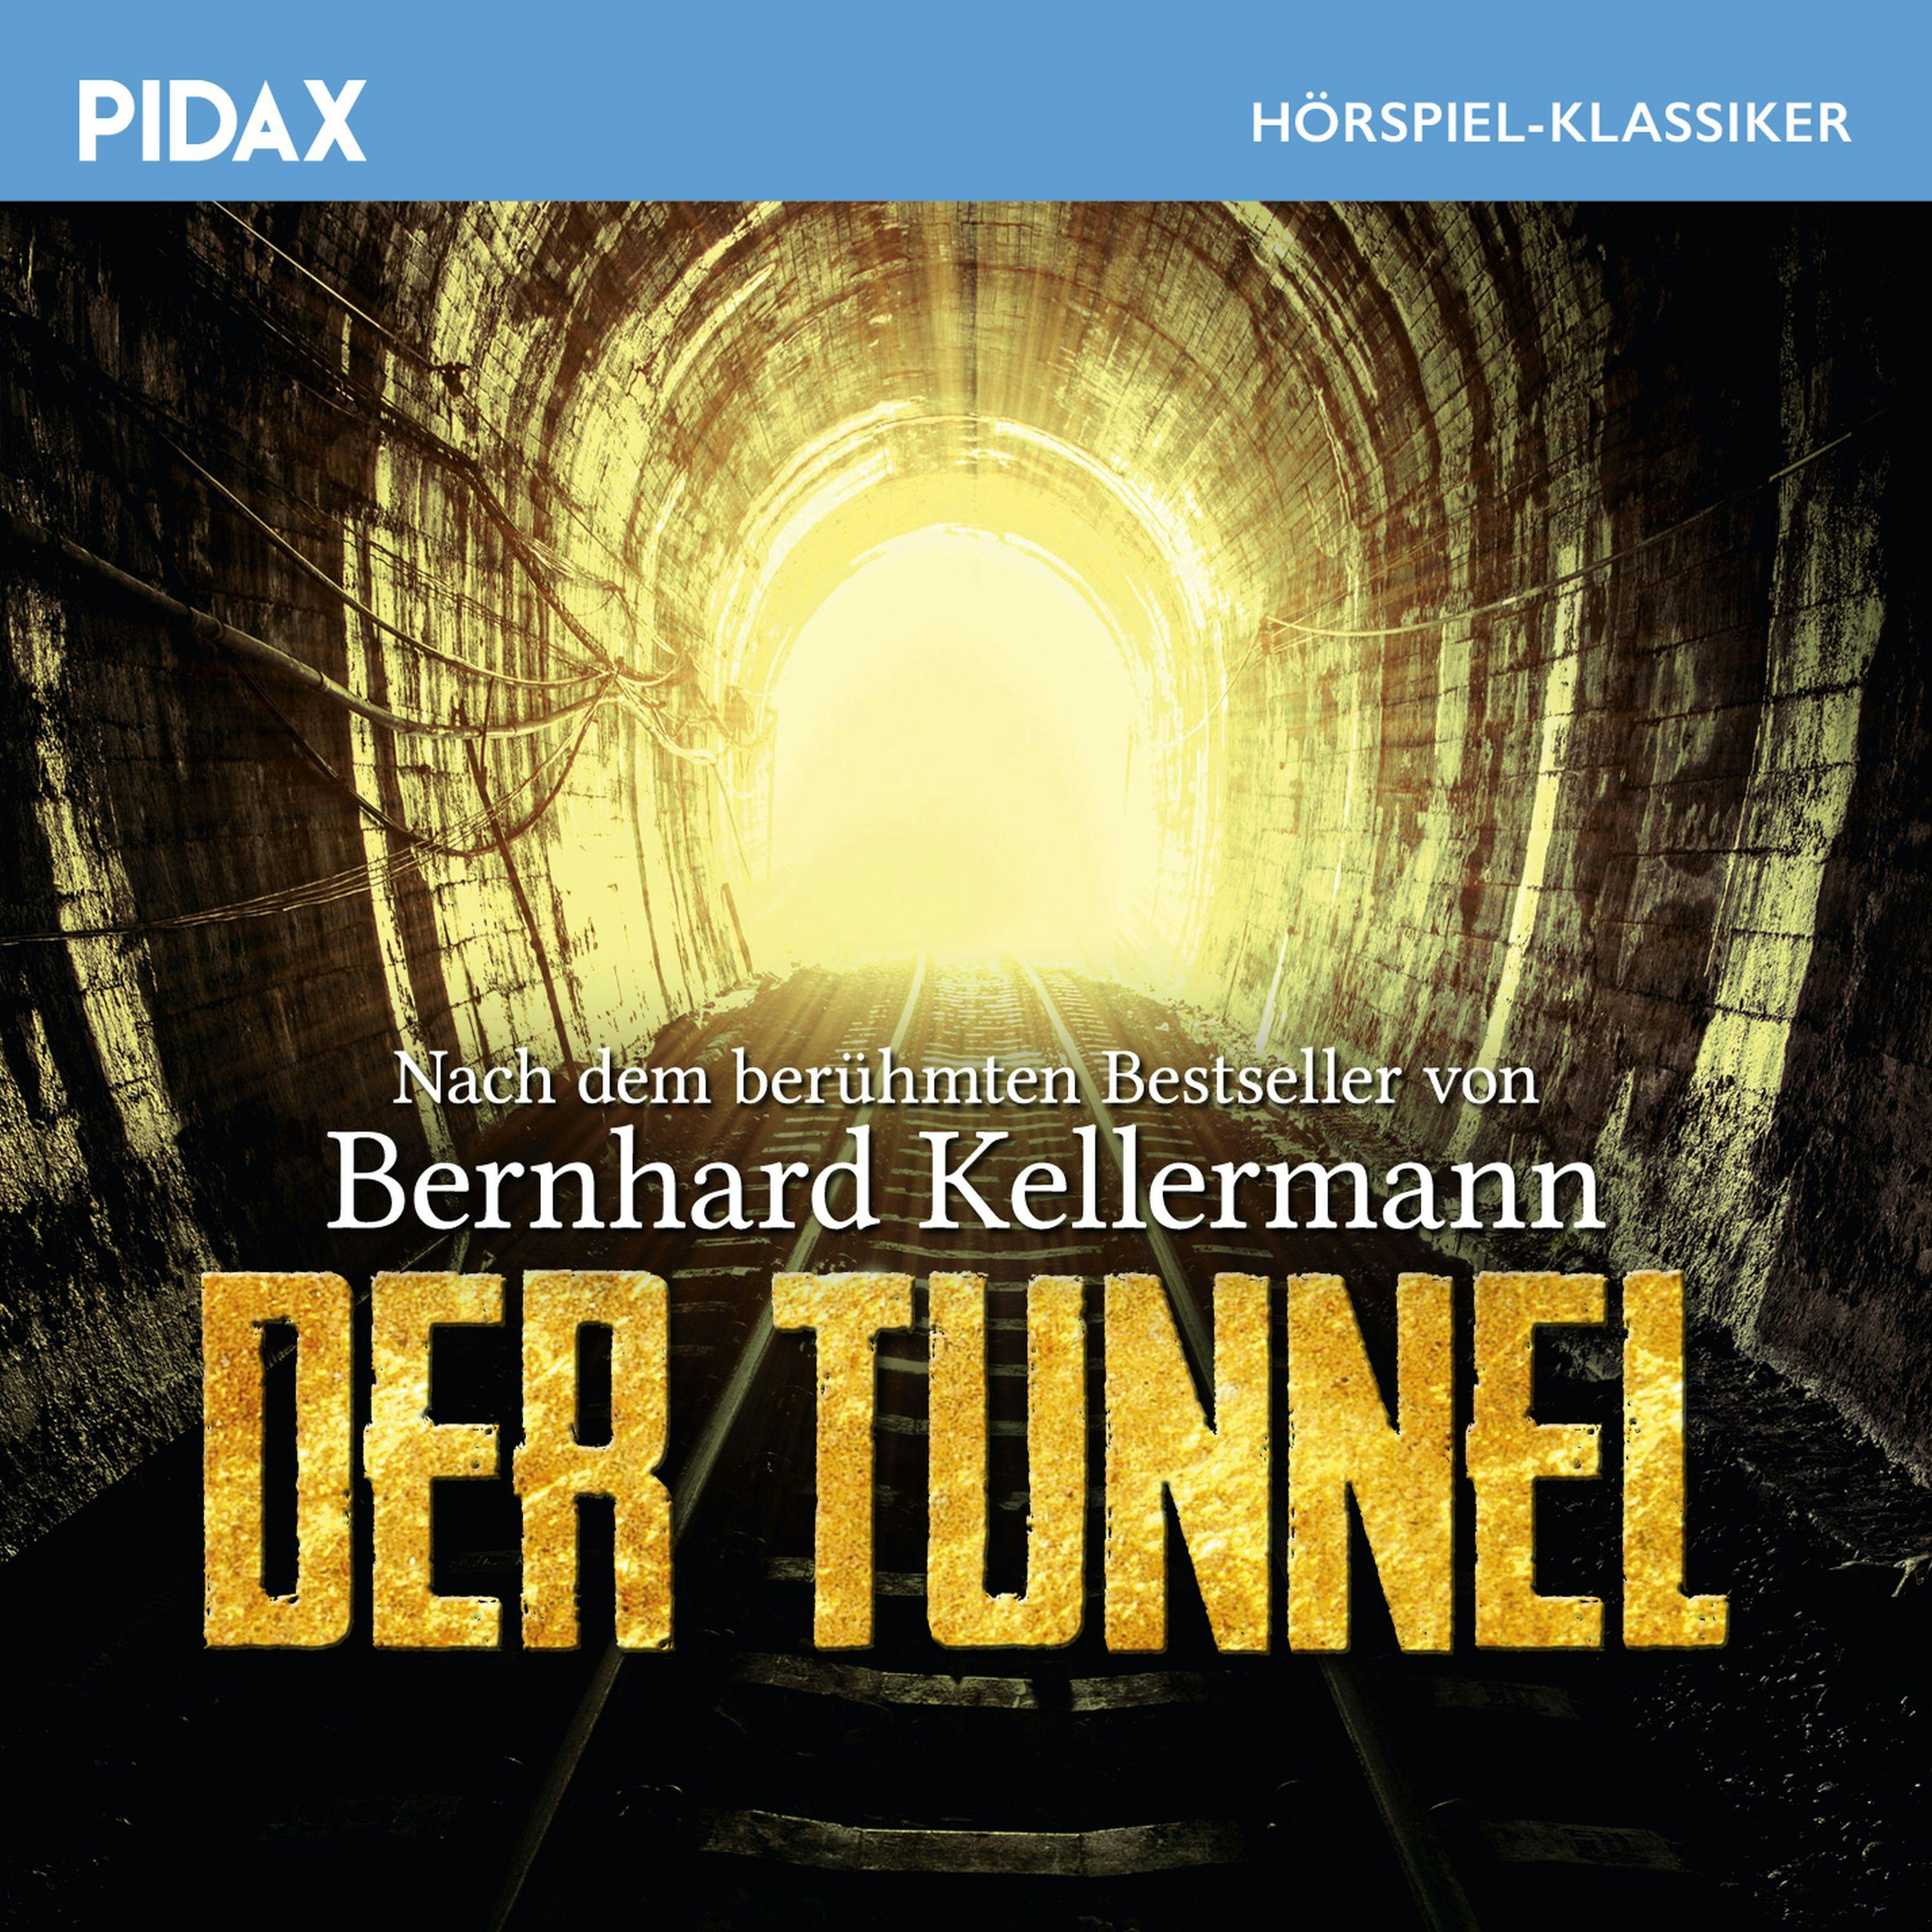 Der Tunnel - Bernhard Kellermann